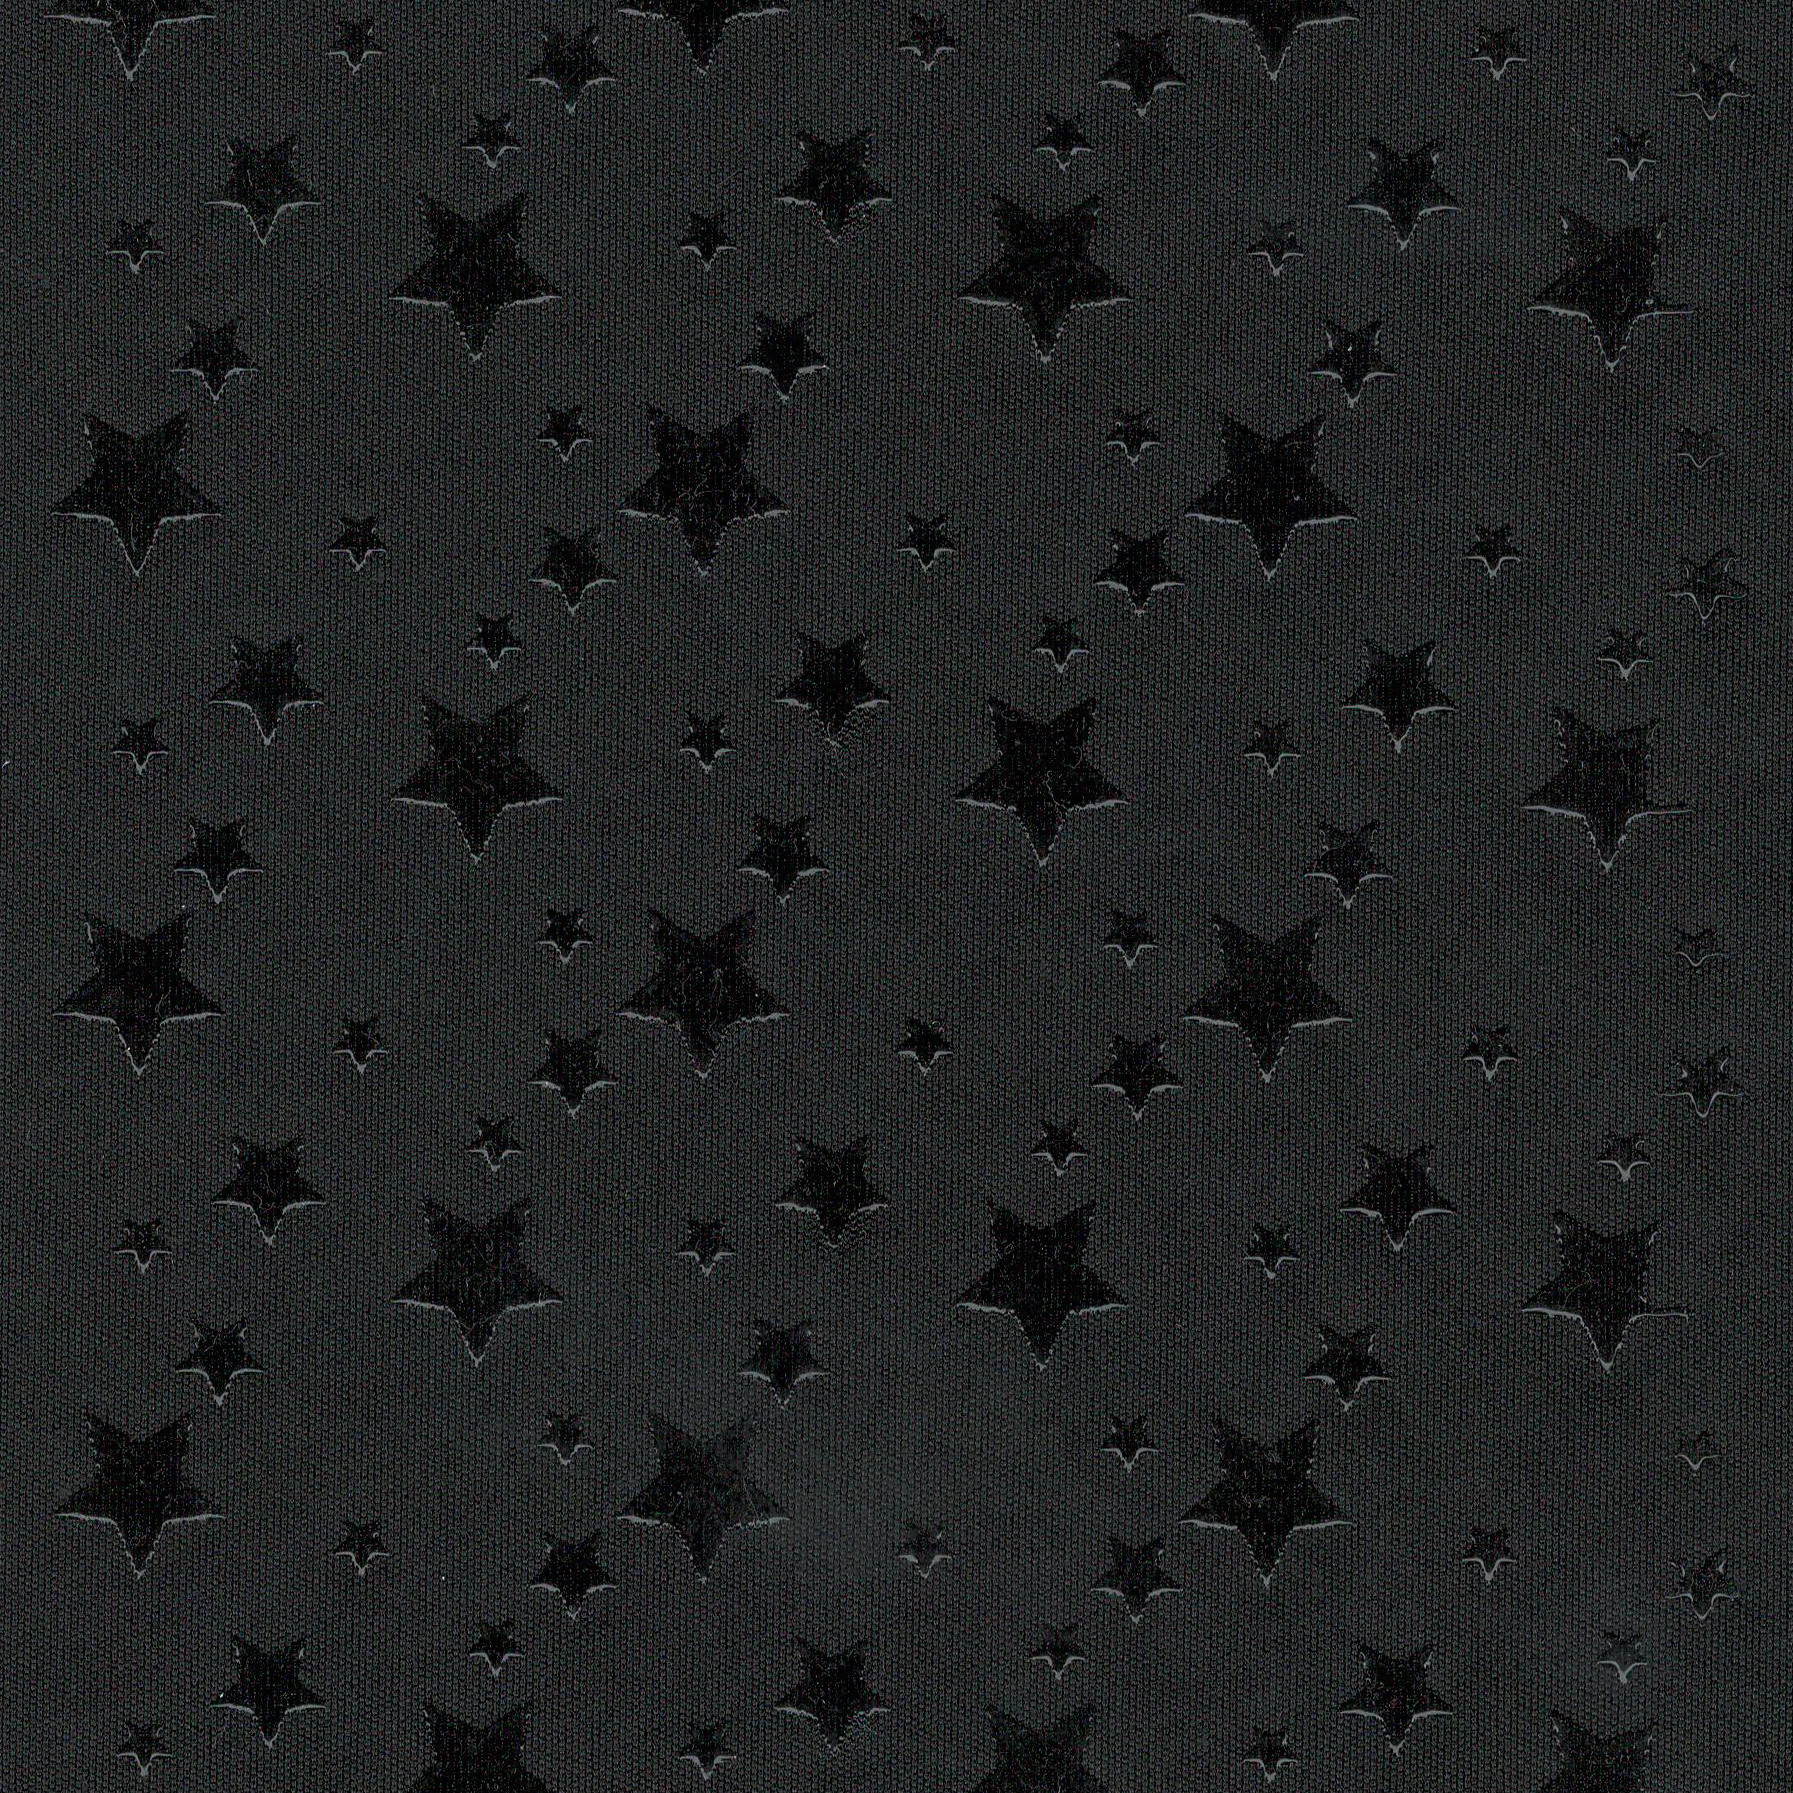 矽膠止滑 大小星星 黑色